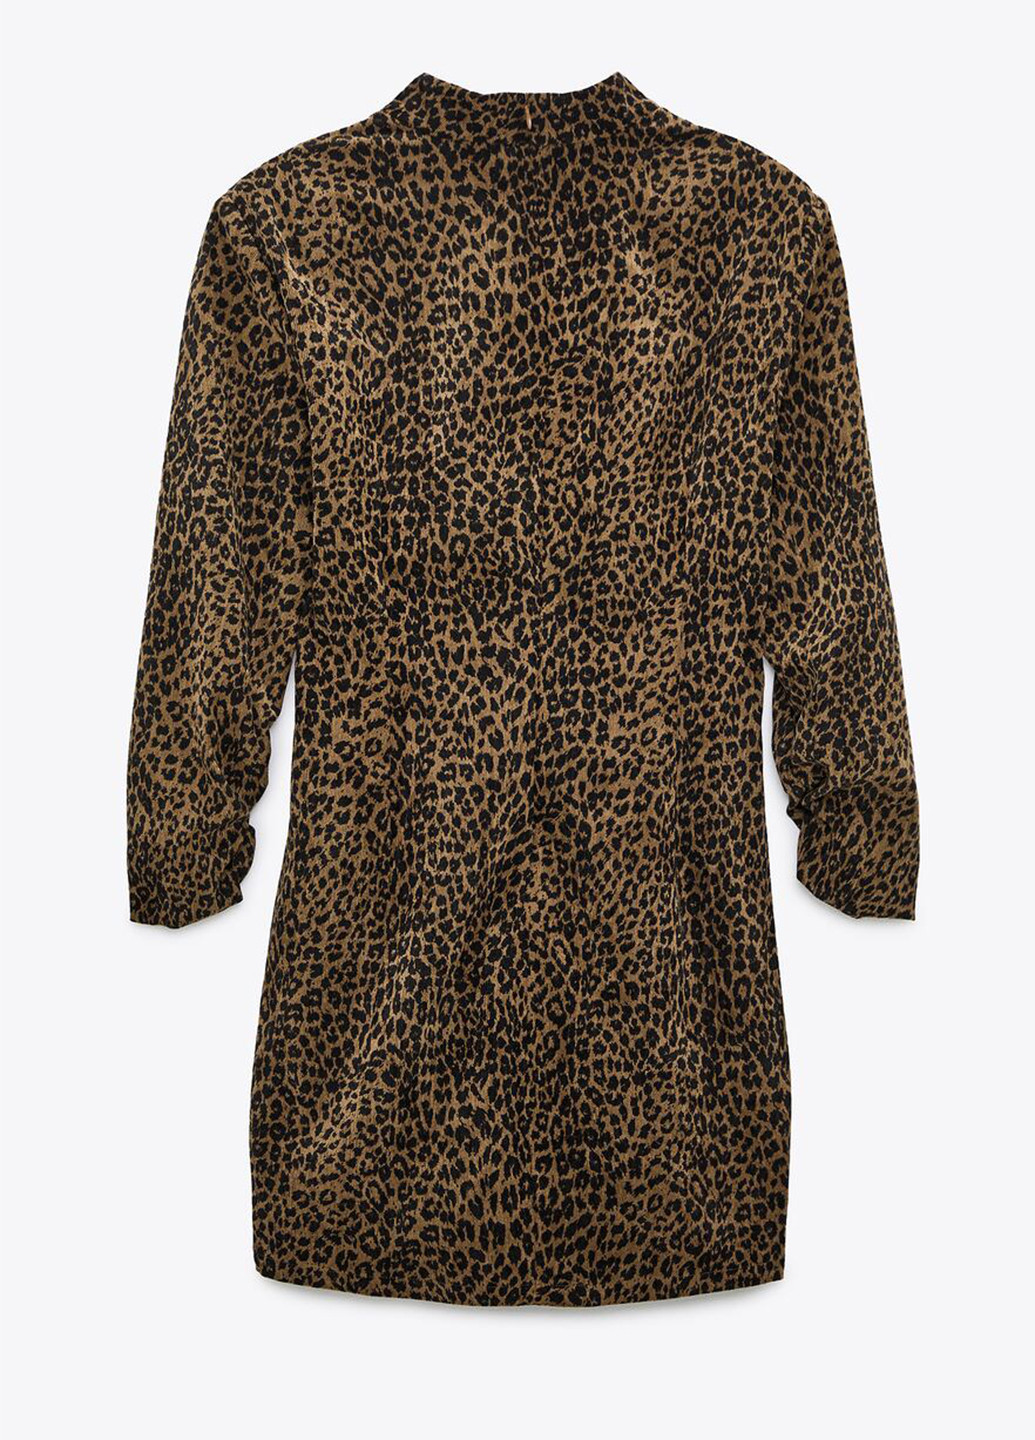 Коричневое коктейльное платье футляр Zara леопардовый